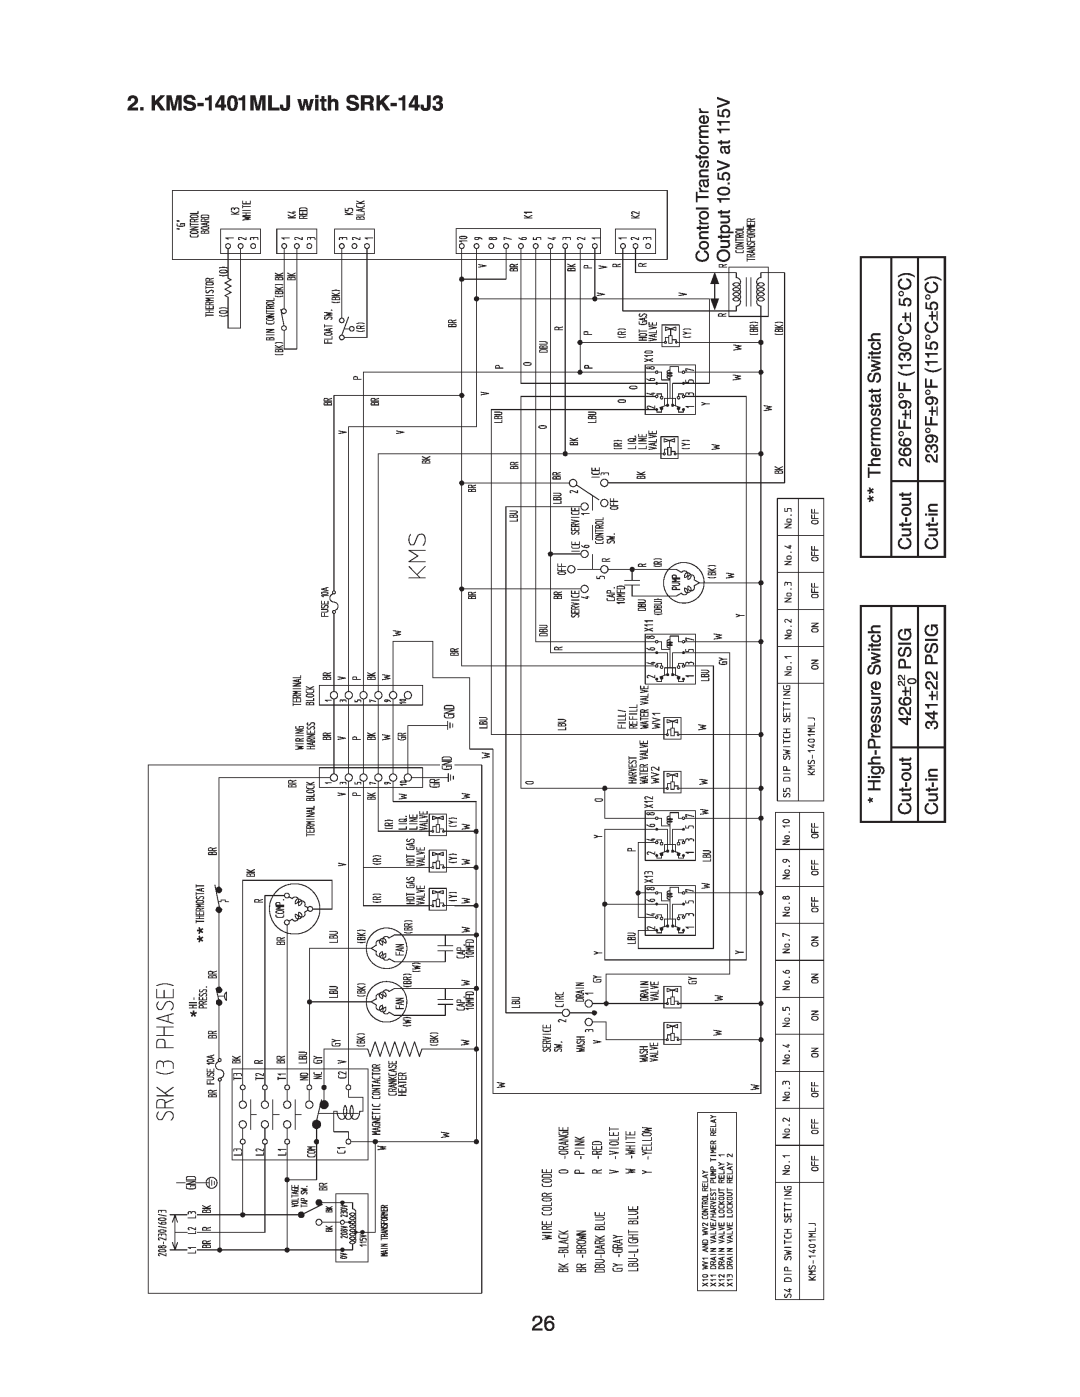 Hoshizaki KMS-1401MLJ, Condensing Unit Models SRK-14J/3 Kms, 1401MLJ with SRK-14J3, Control Transformer, Output 10.5V at 